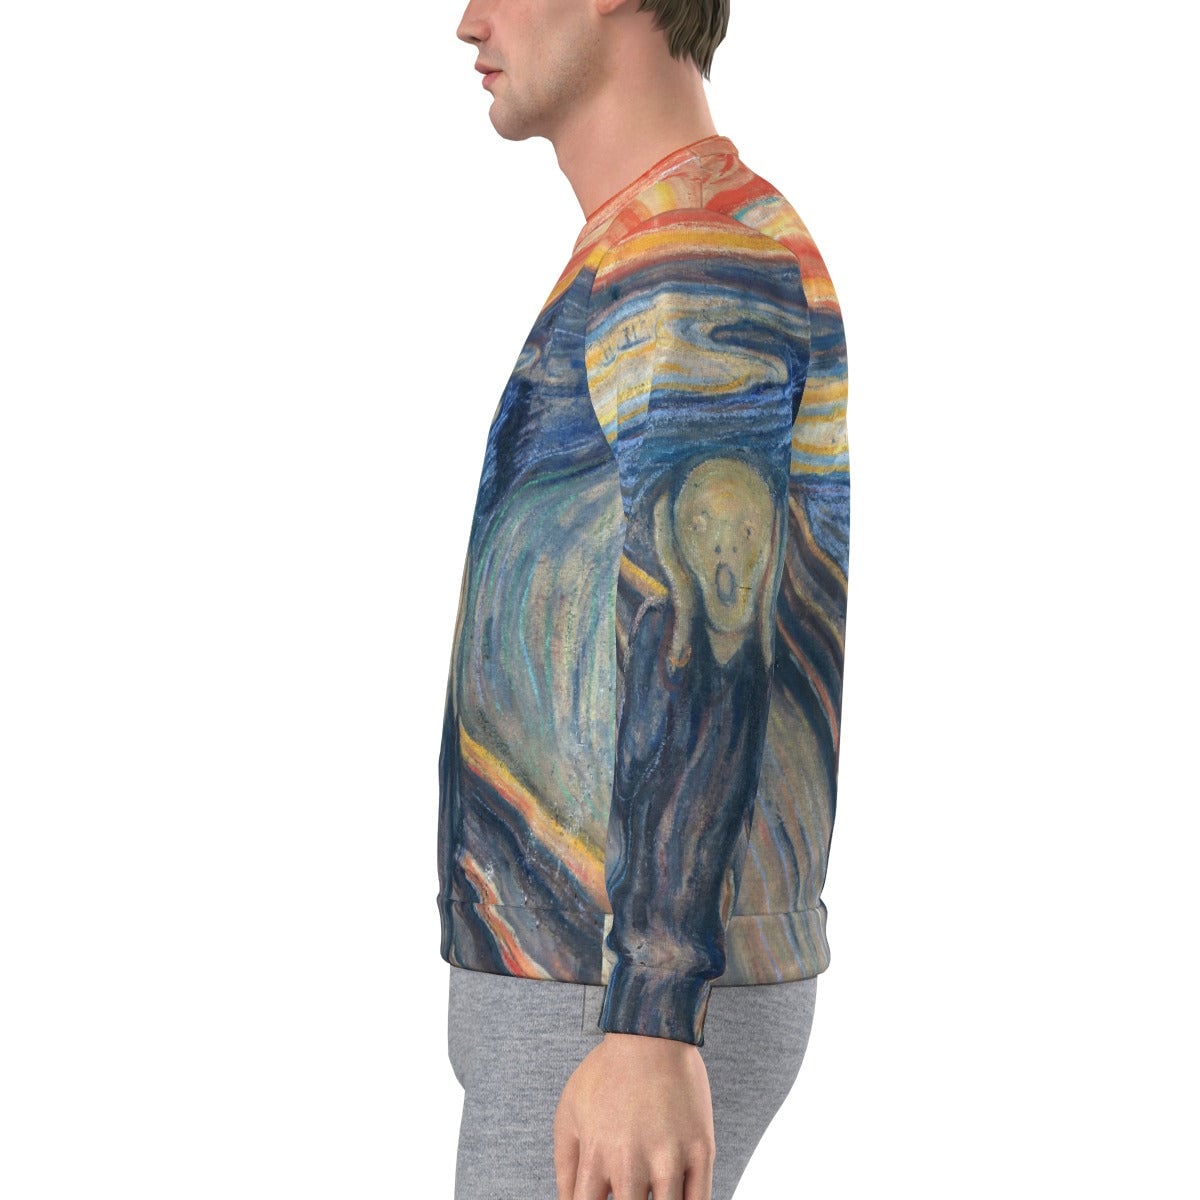 The Scream by Edvard Munch Painting Art Sweatshirt